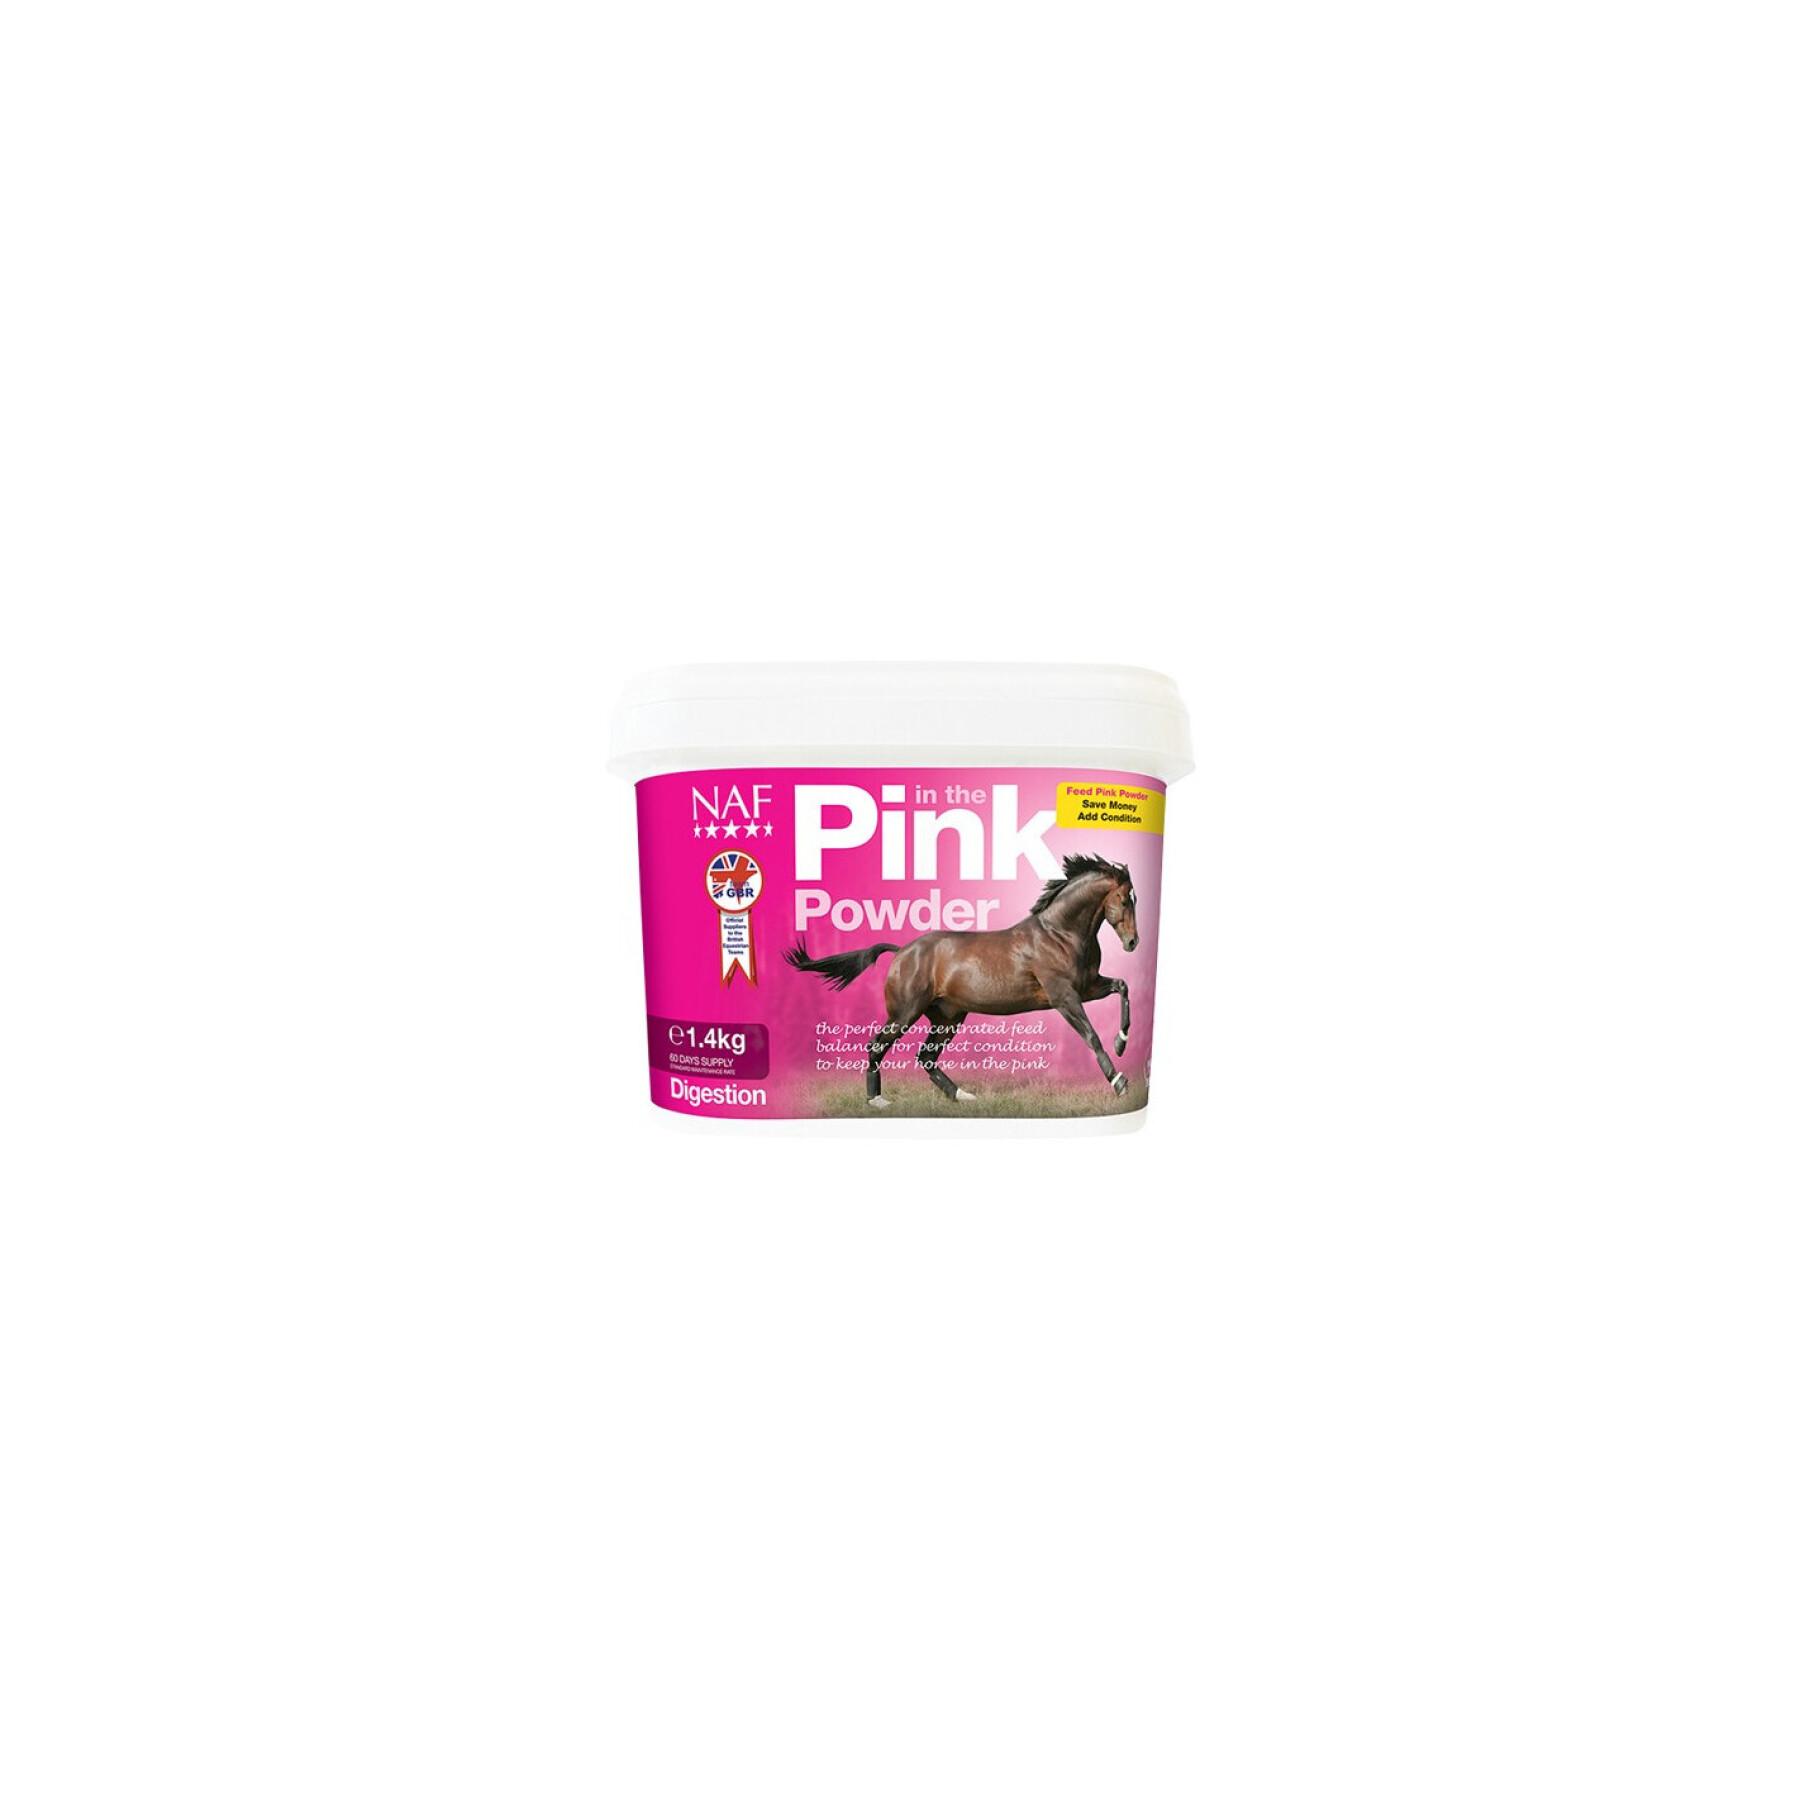 Suplemento digestivo para caballos NAF In the Pink Powder